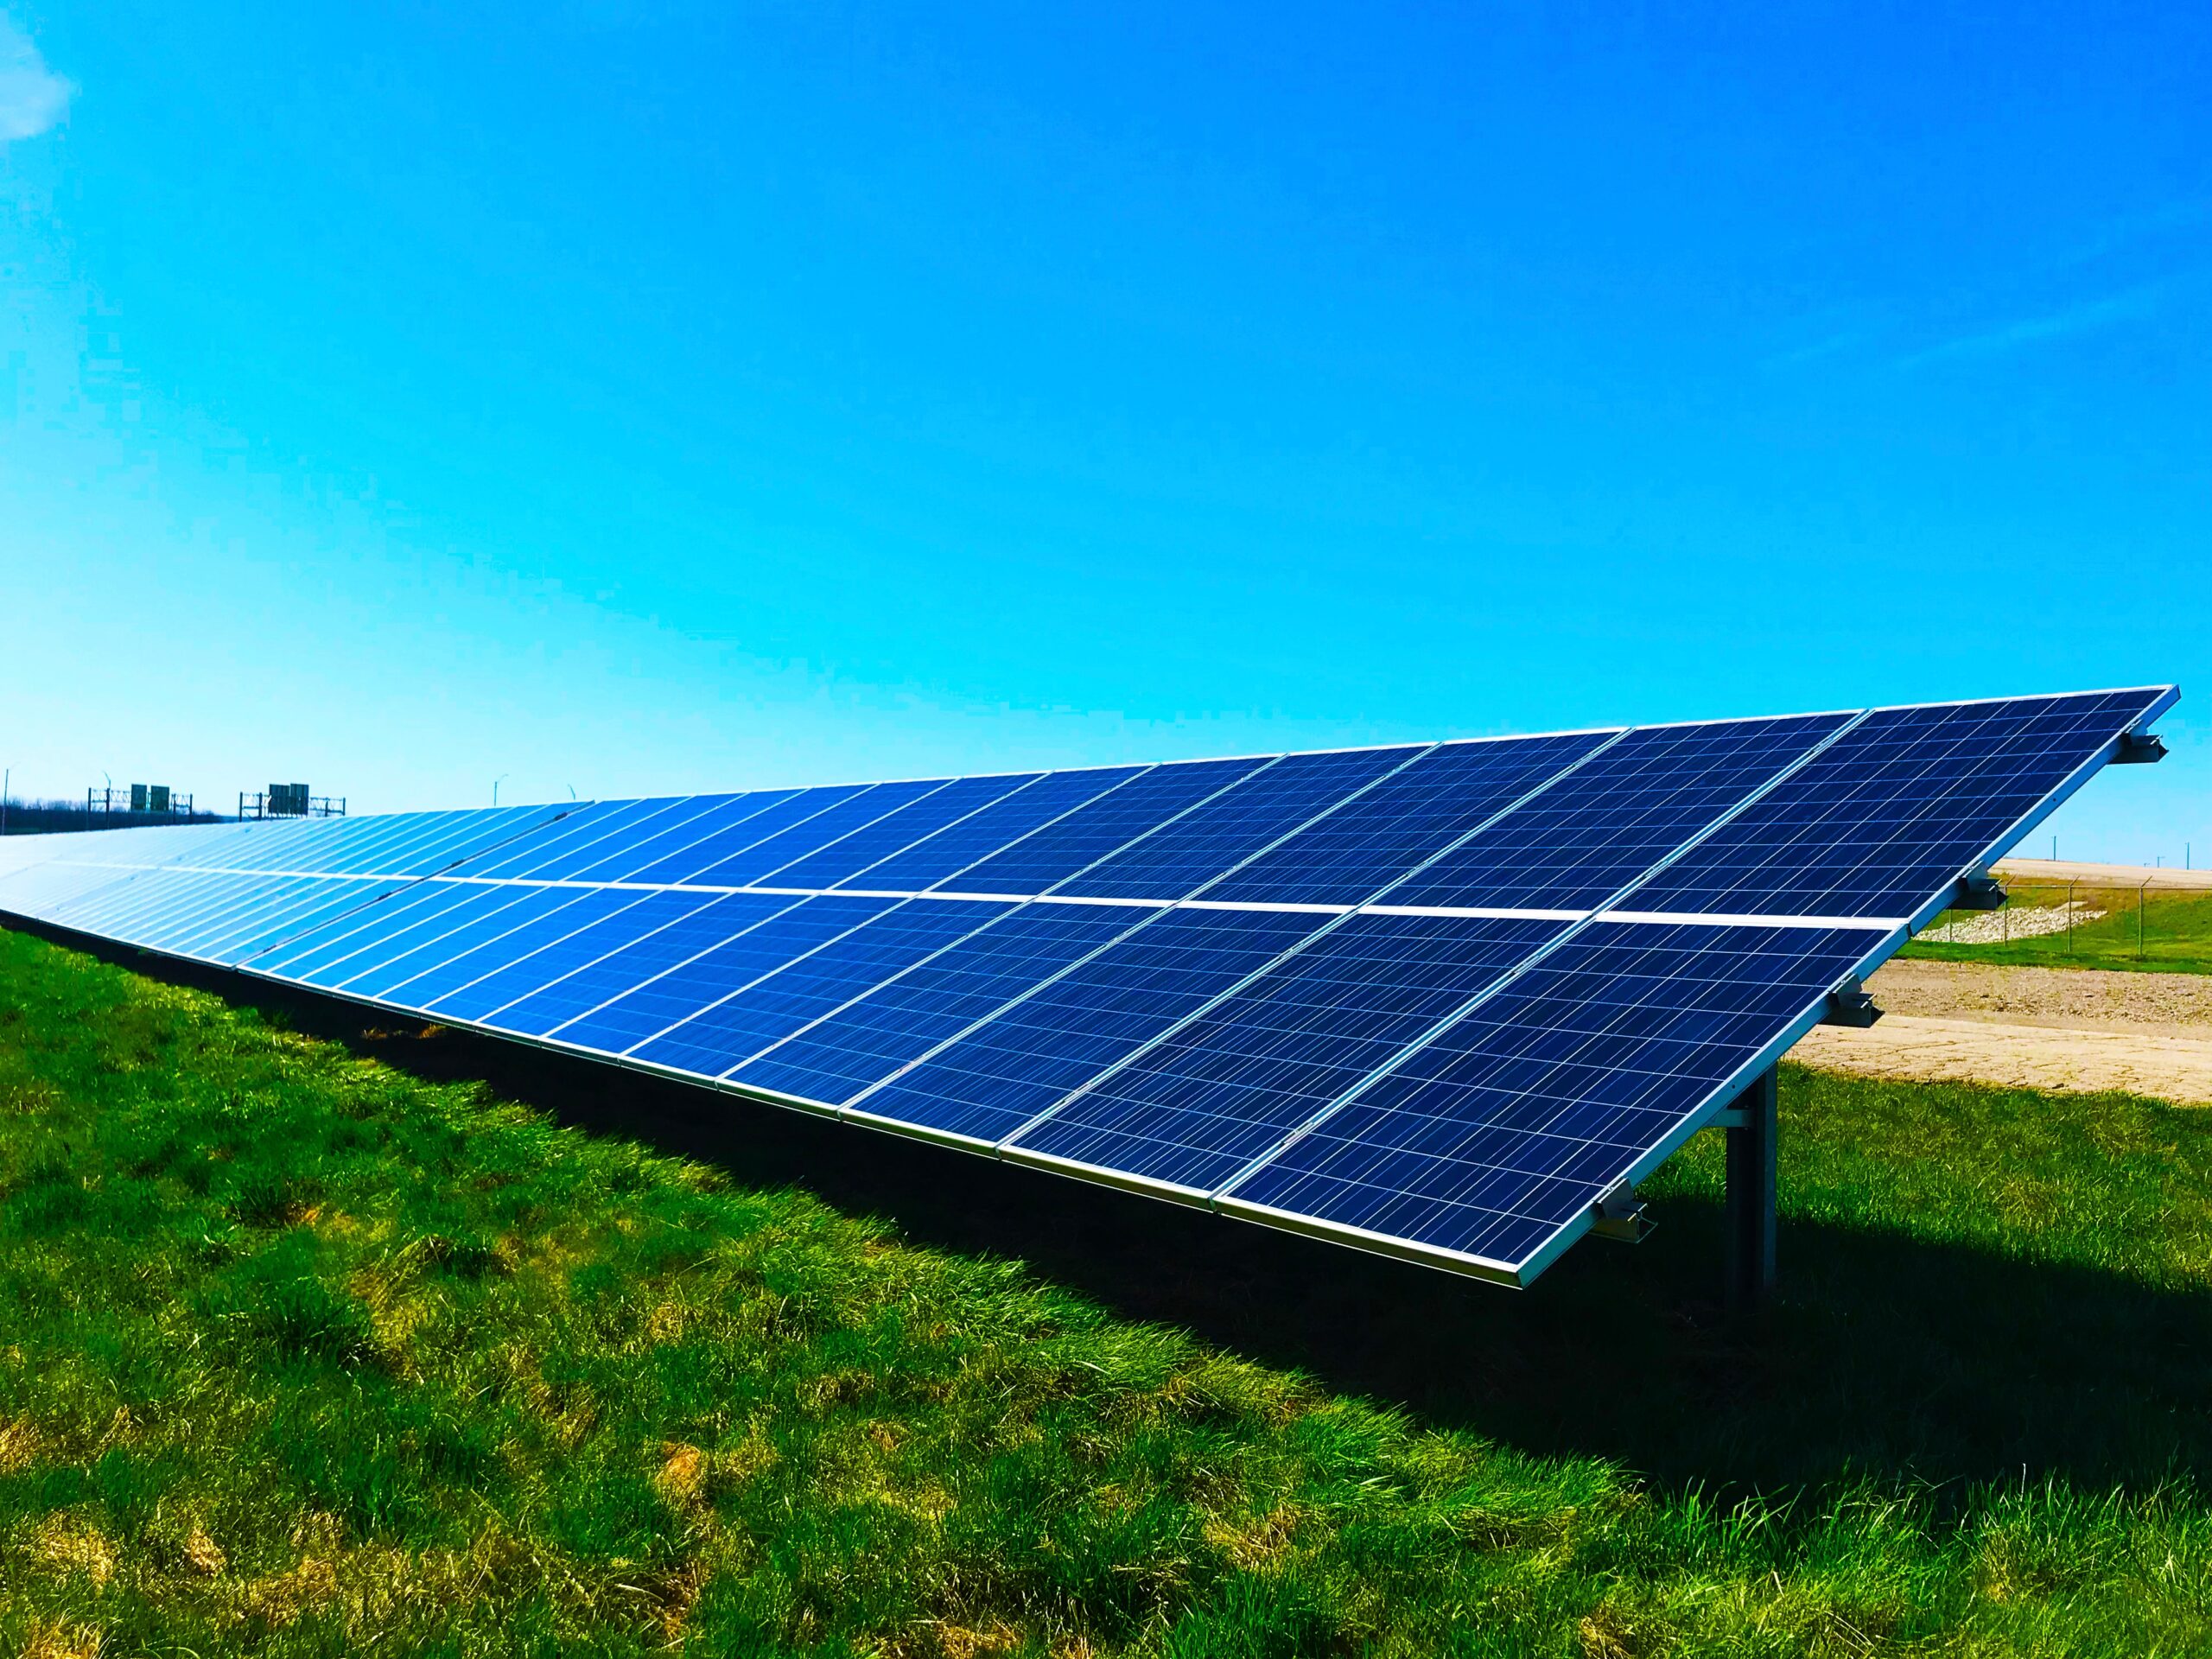 Optez pour une solution énergétique durable avec les panneaux solaires de Sol-Air Tech, leader en énergie renouvelable et vente de matériel électrique à Québec.